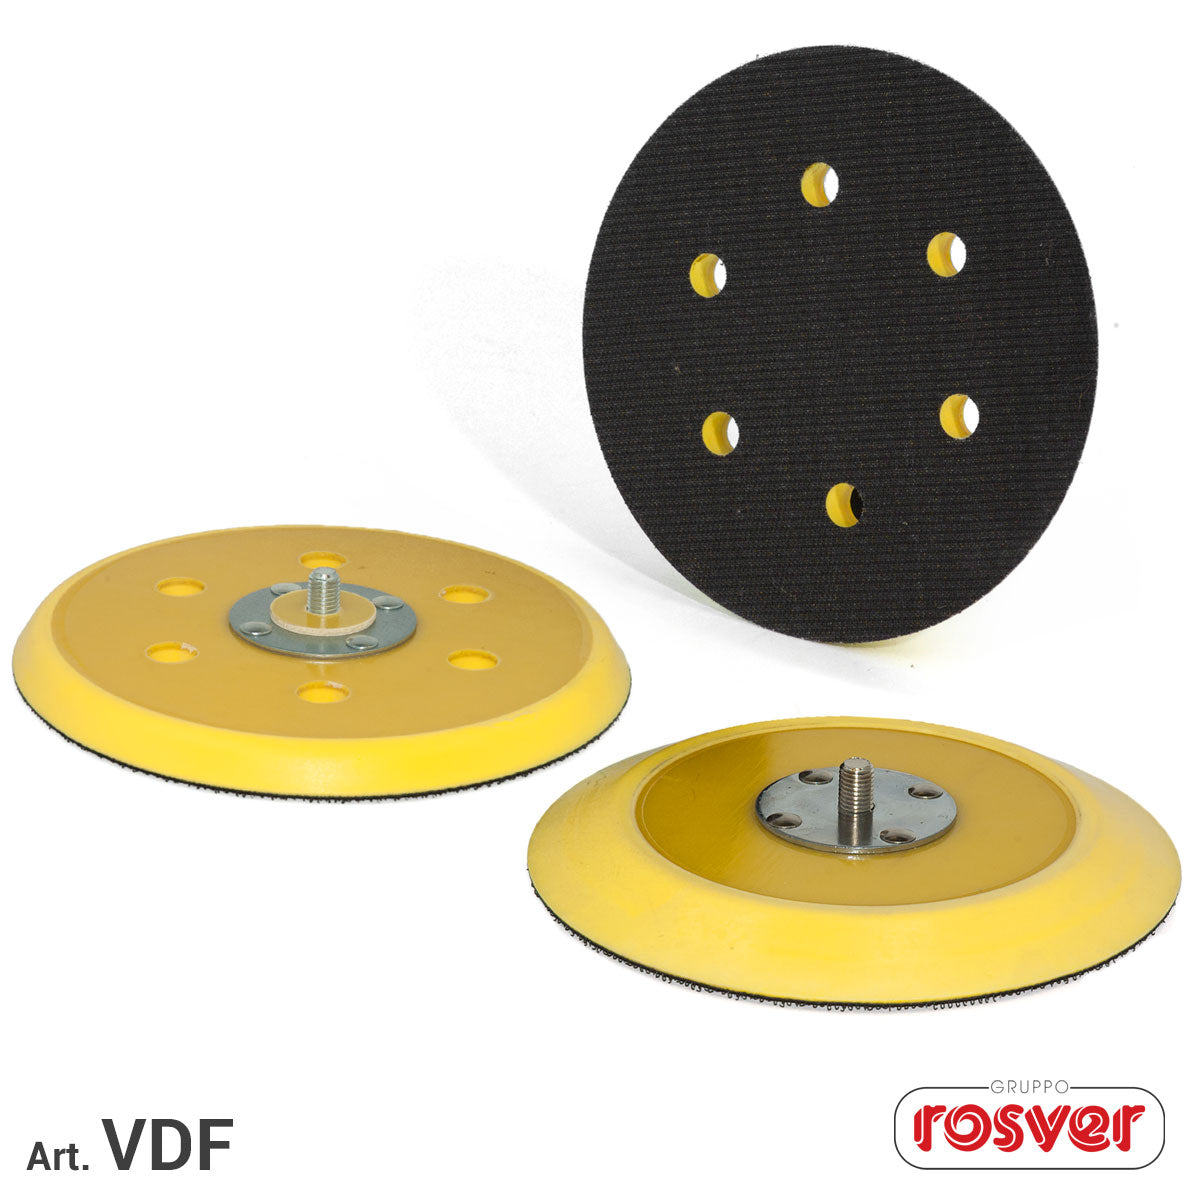 Backing pad for random orbital sanders Rosver VDFE SP.12 - Conf.1pz